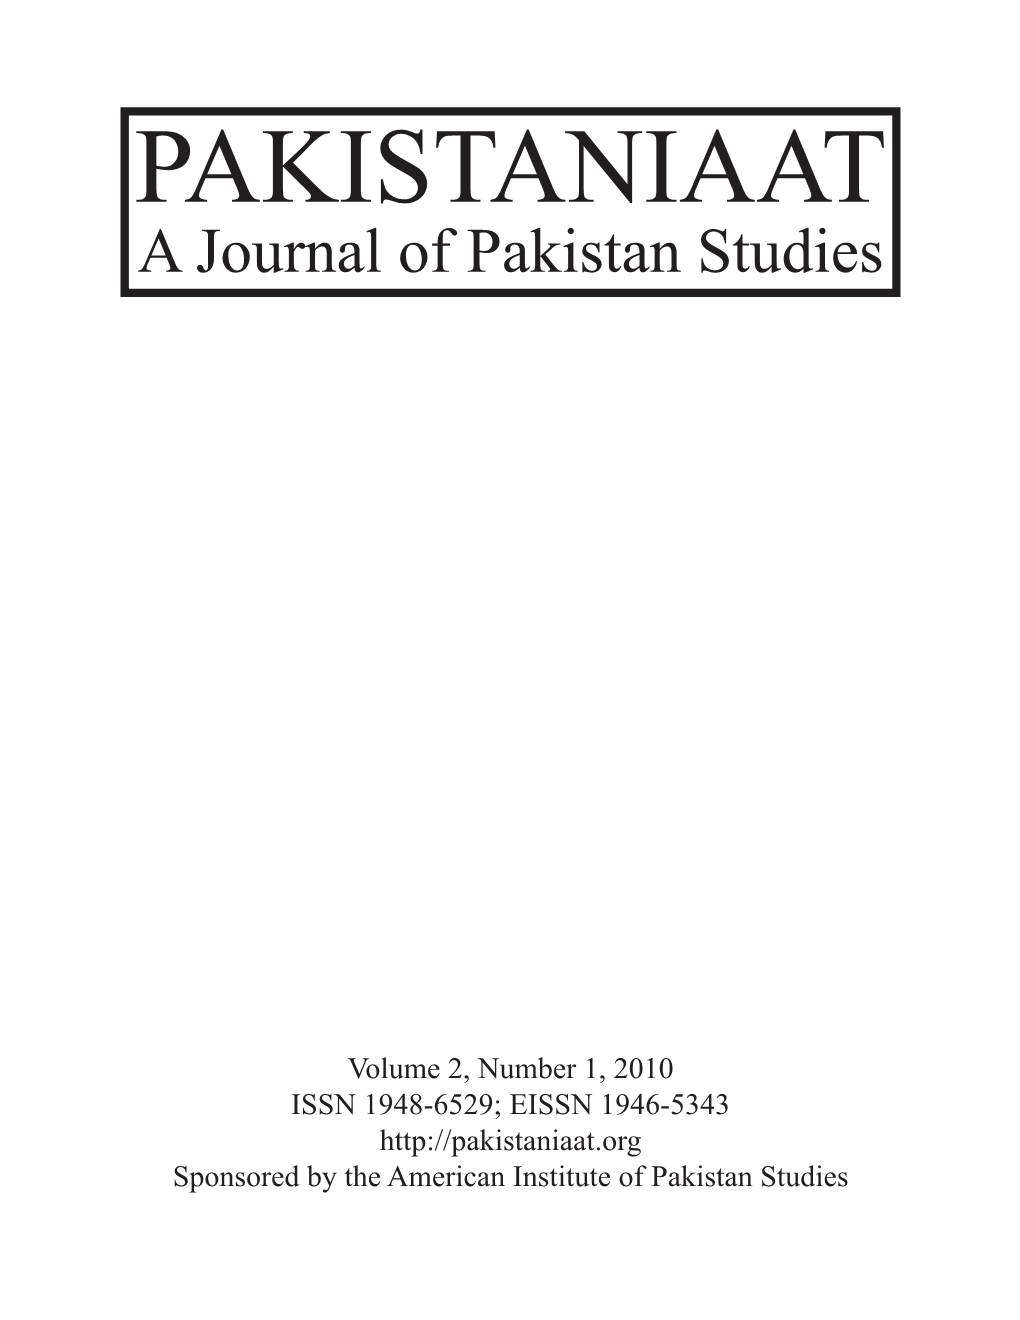 Pakistaniaat: a Journal of Pakistan Studies ISSN 1948-6529; EISSN 1946-5343